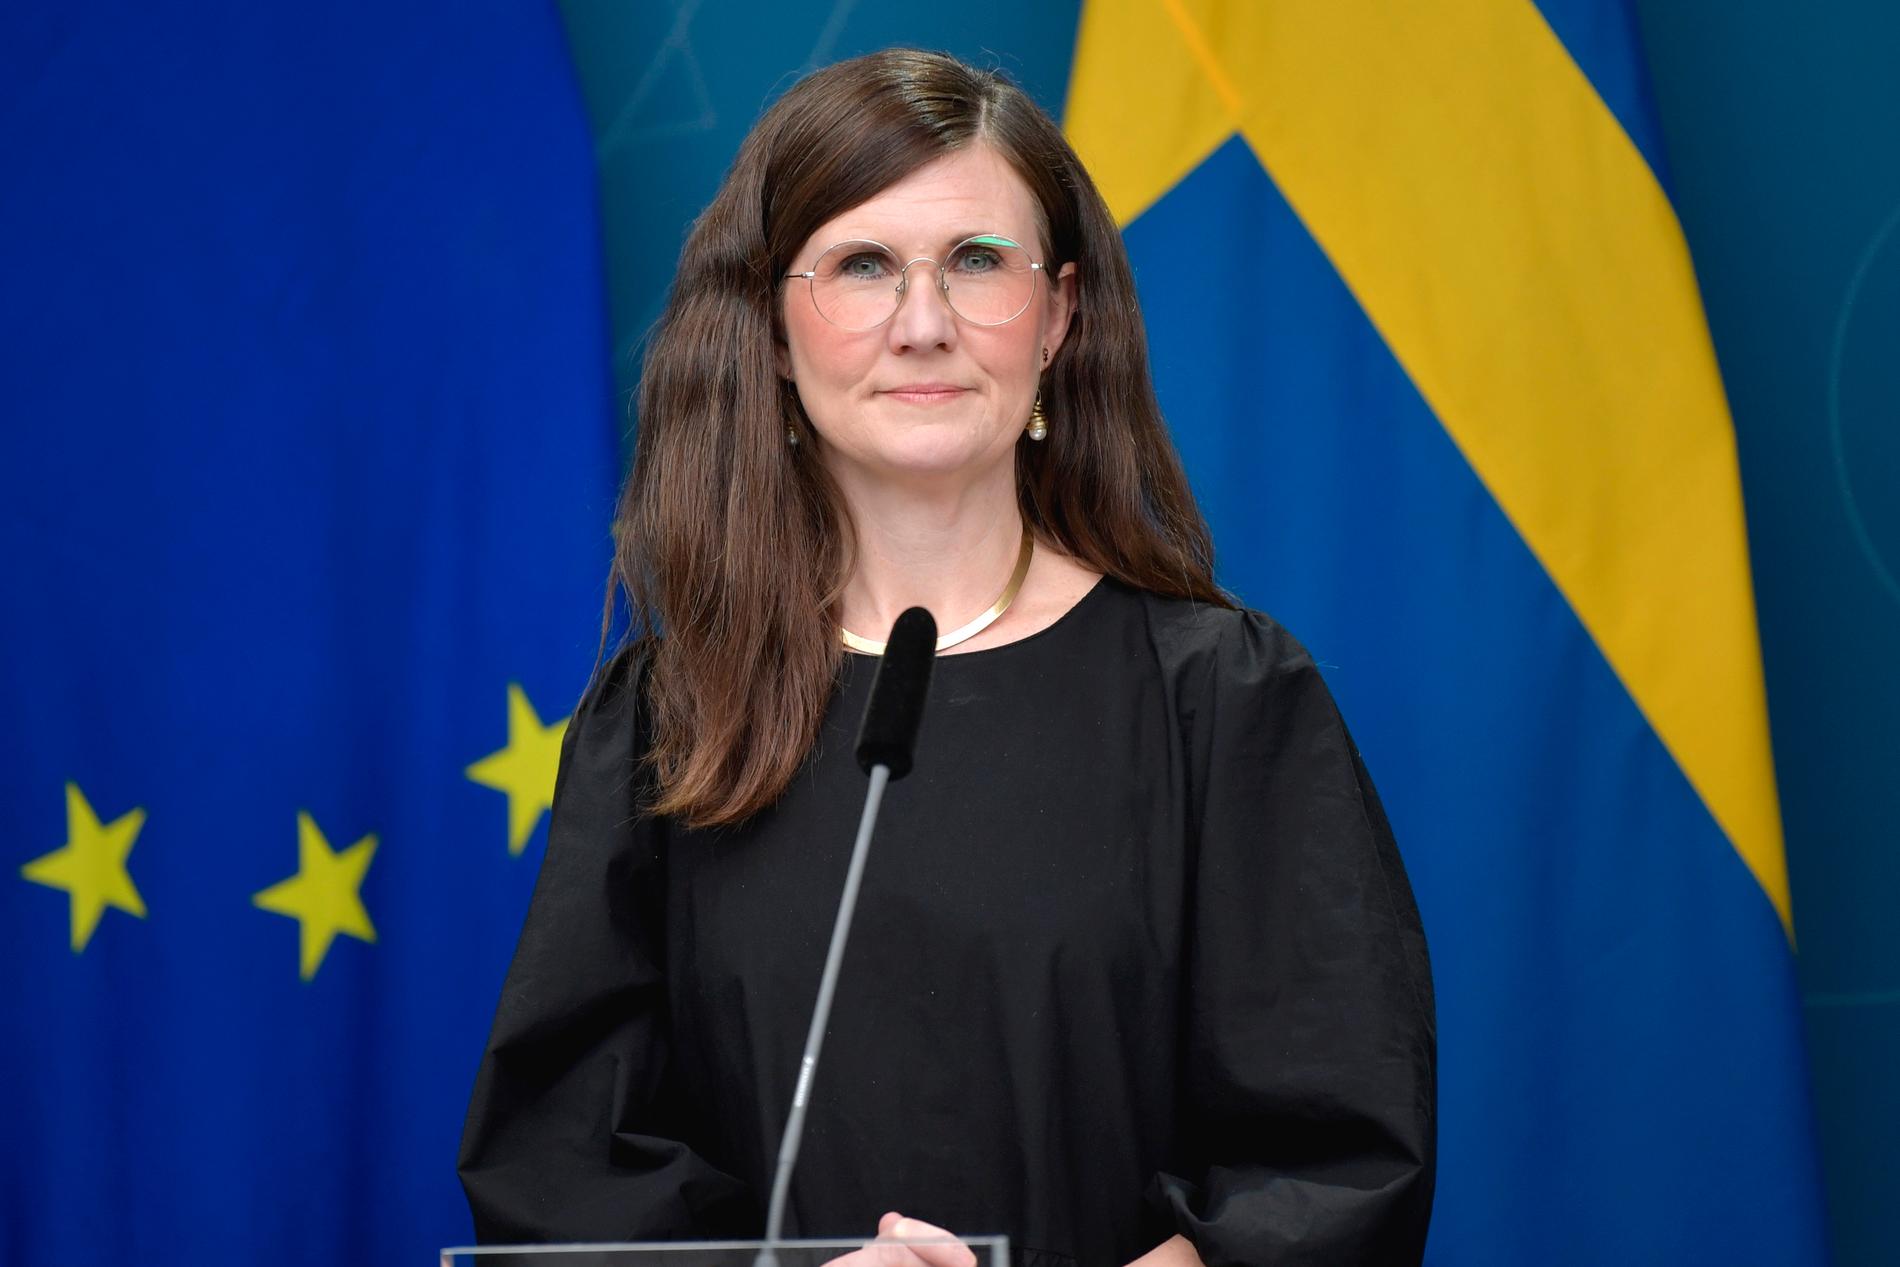 Märta Stenevi, jämställdhets- och bostadsminister (MP).